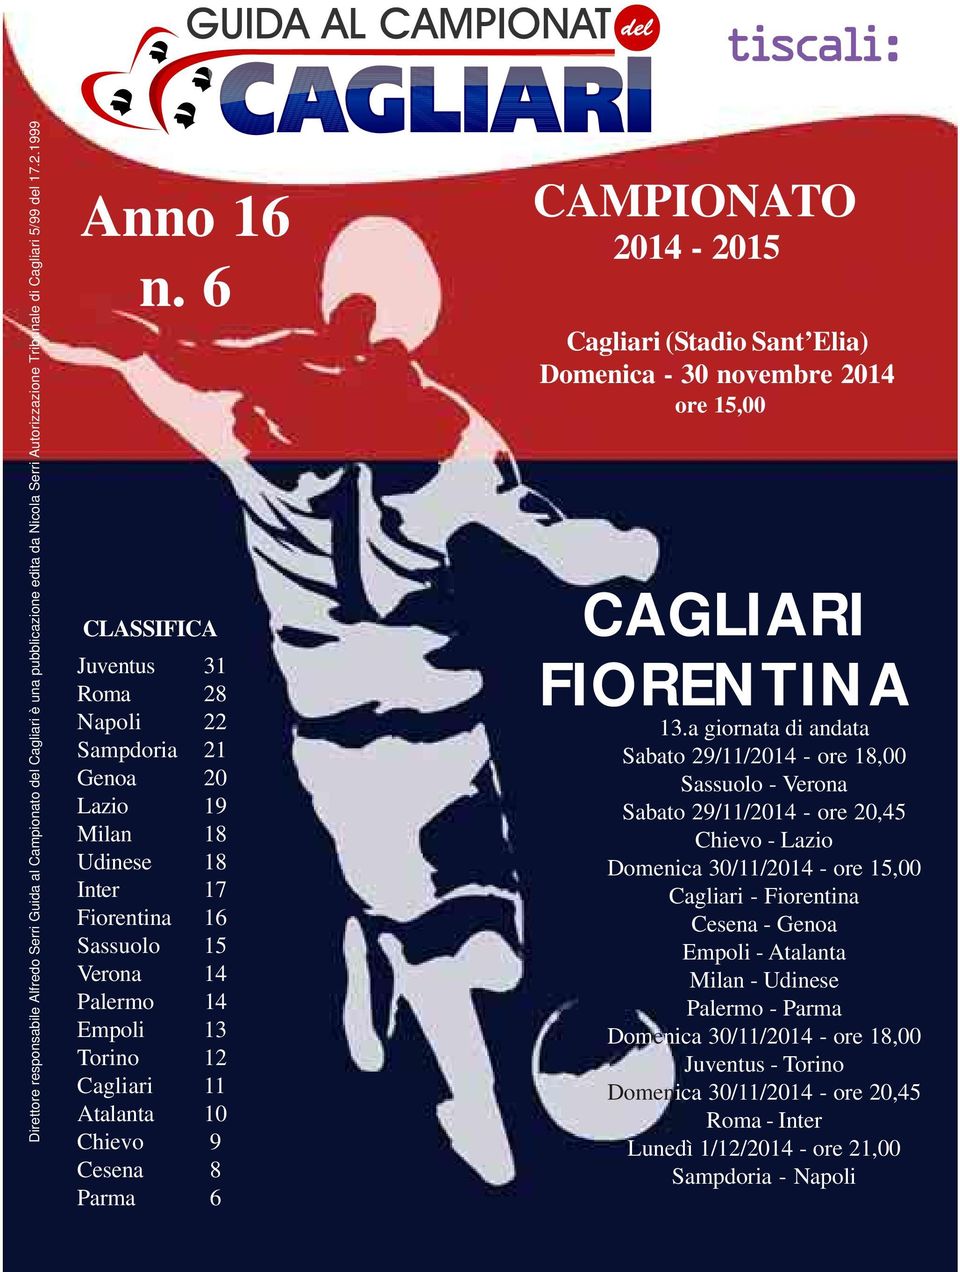 Chievo 9 Cesena 8 Parma 6 N. 1 CAMPIONATO 2014-2015 Cagliari (Stadio Sant Elia) Domenica - 30 novembre 2014 ore 15,00 CAGLIARI FIORENTINA 13.